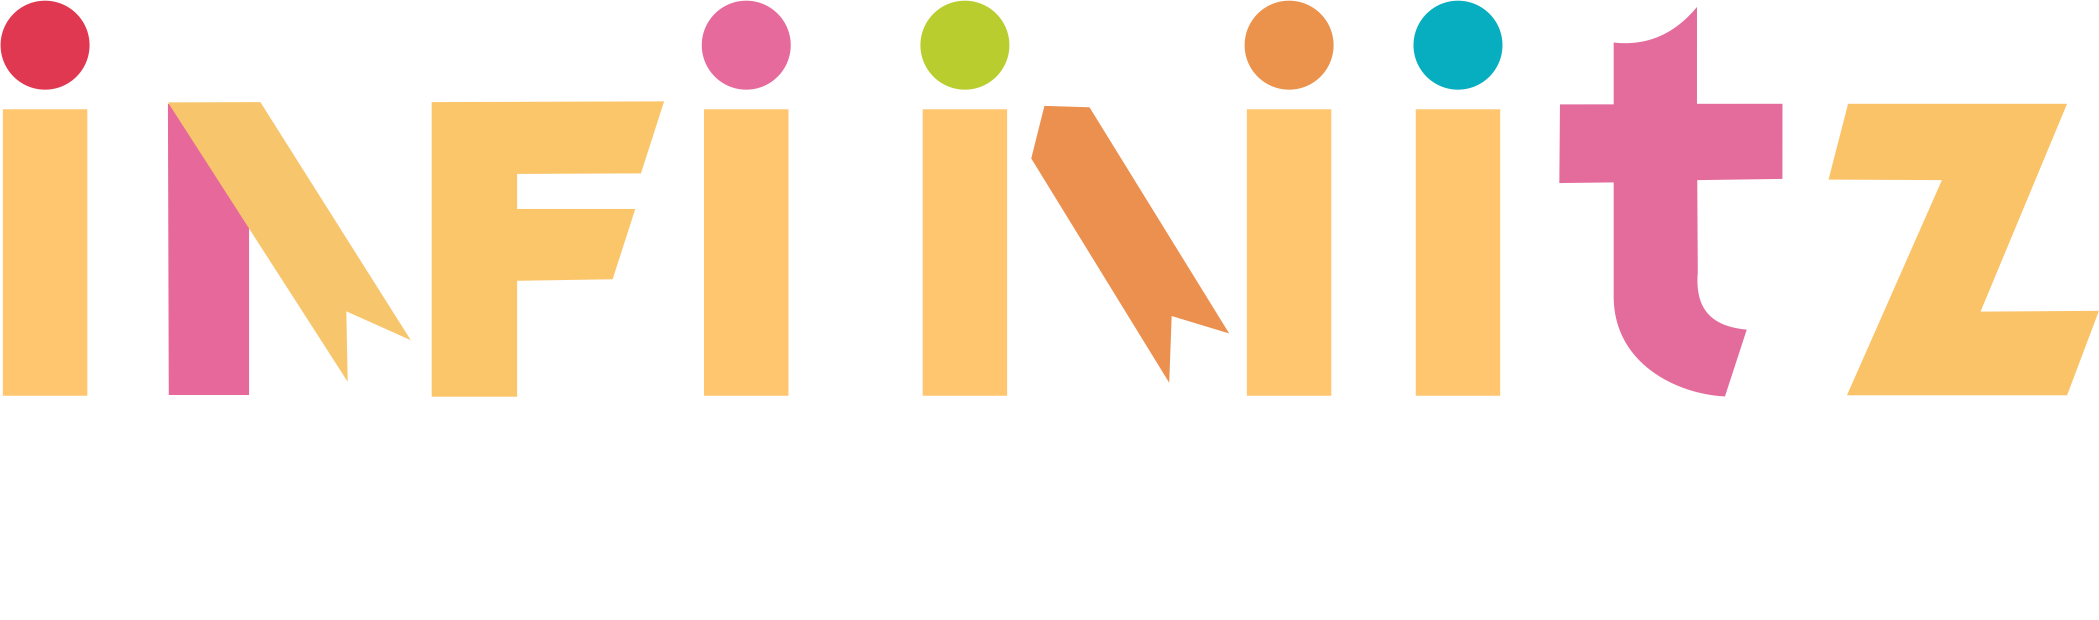 infinitz anime - 